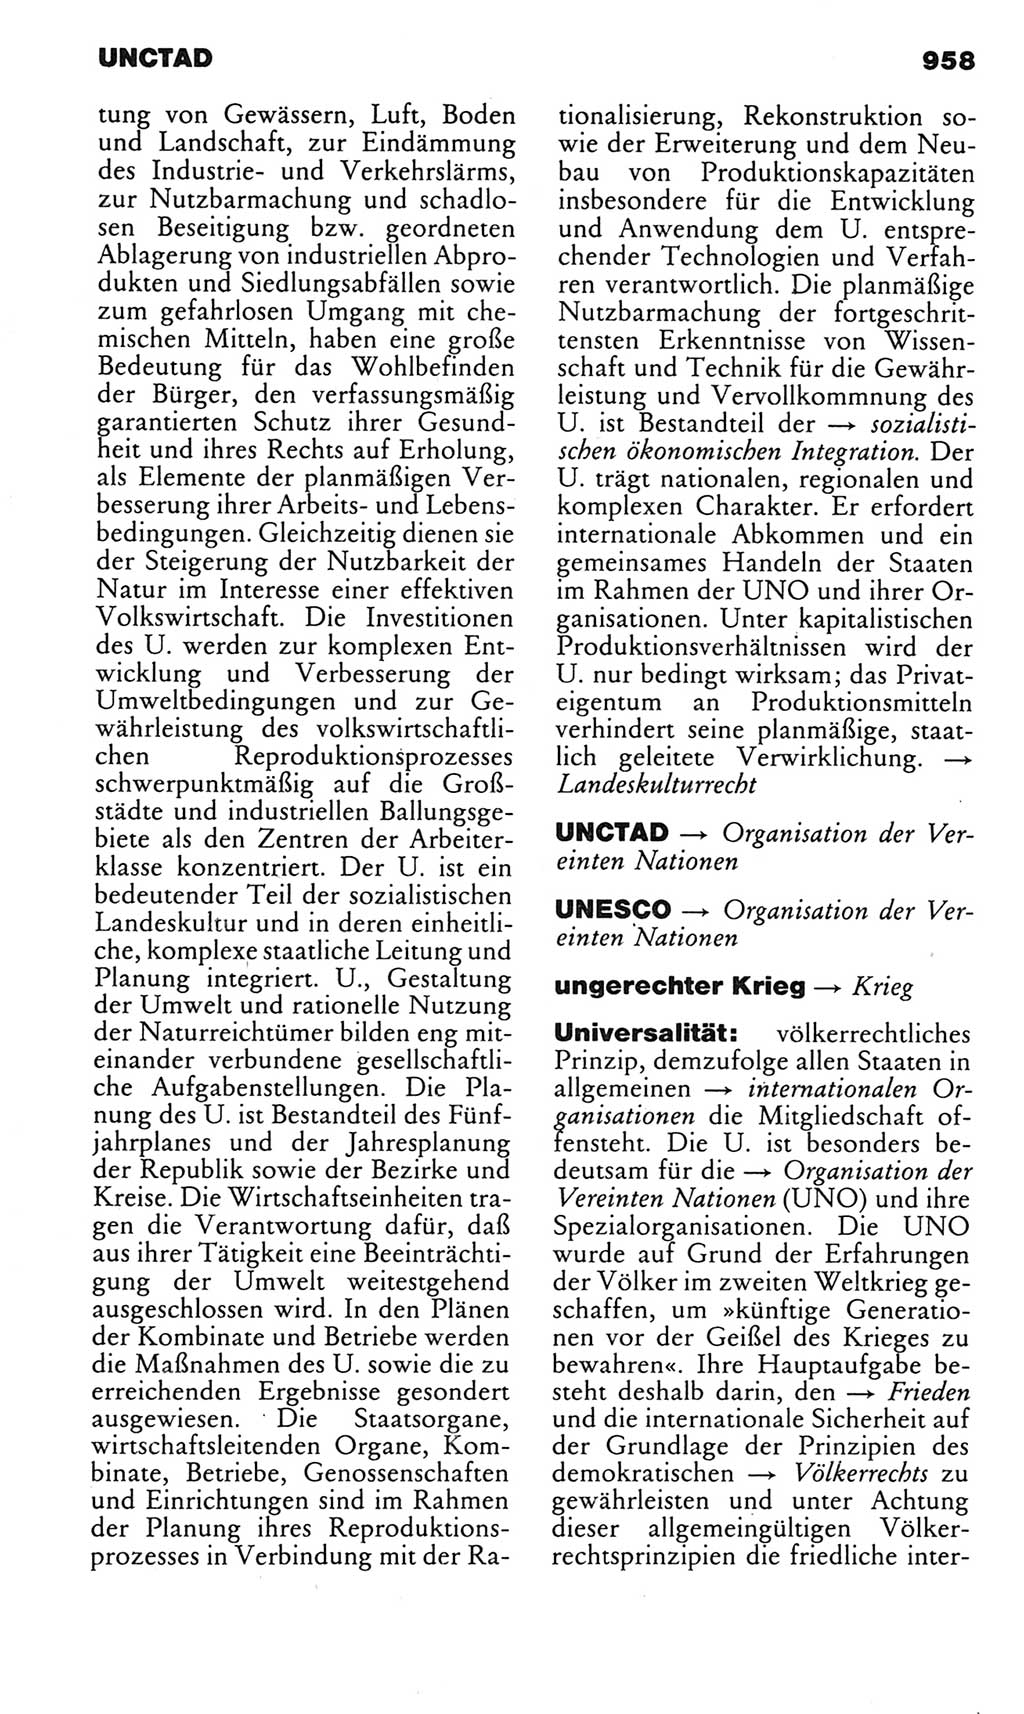 Kleines politisches Wörterbuch [Deutsche Demokratische Republik (DDR)] 1983, Seite 958 (Kl. pol. Wb. DDR 1983, S. 958)